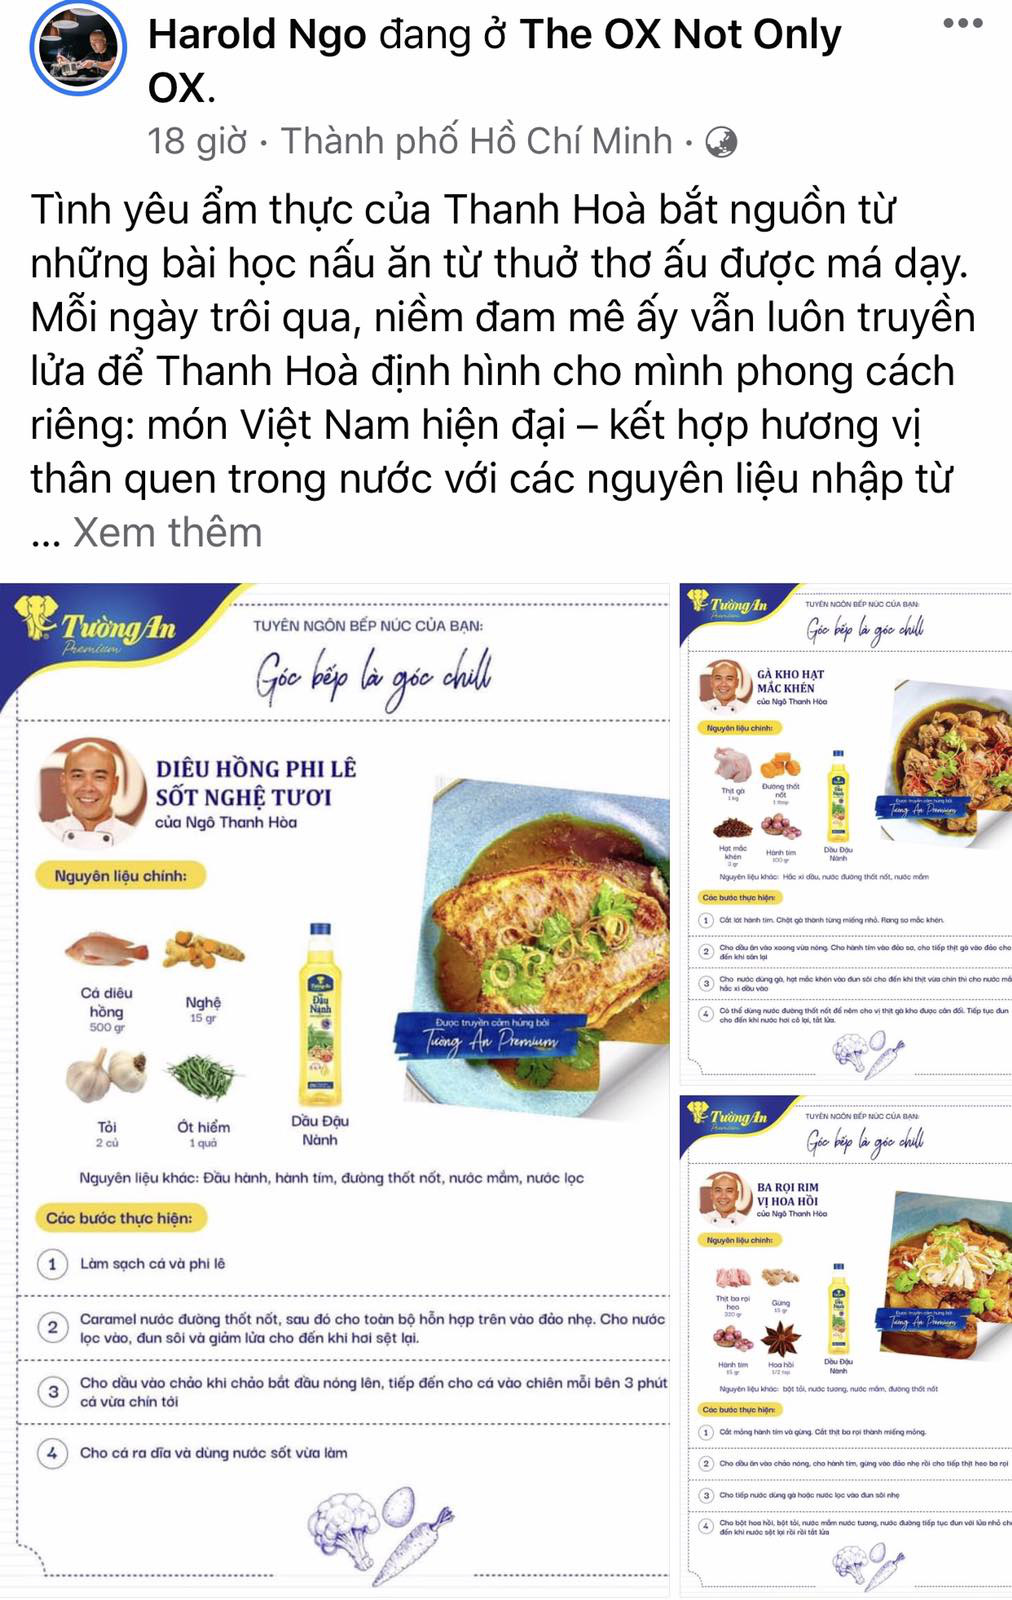 Hội yêu bếp bắt “trend” so tài sáng tạo công thức của riêng mình cùng Masterchef Việt Nam Ngô Thanh Hoà - Ảnh 1.